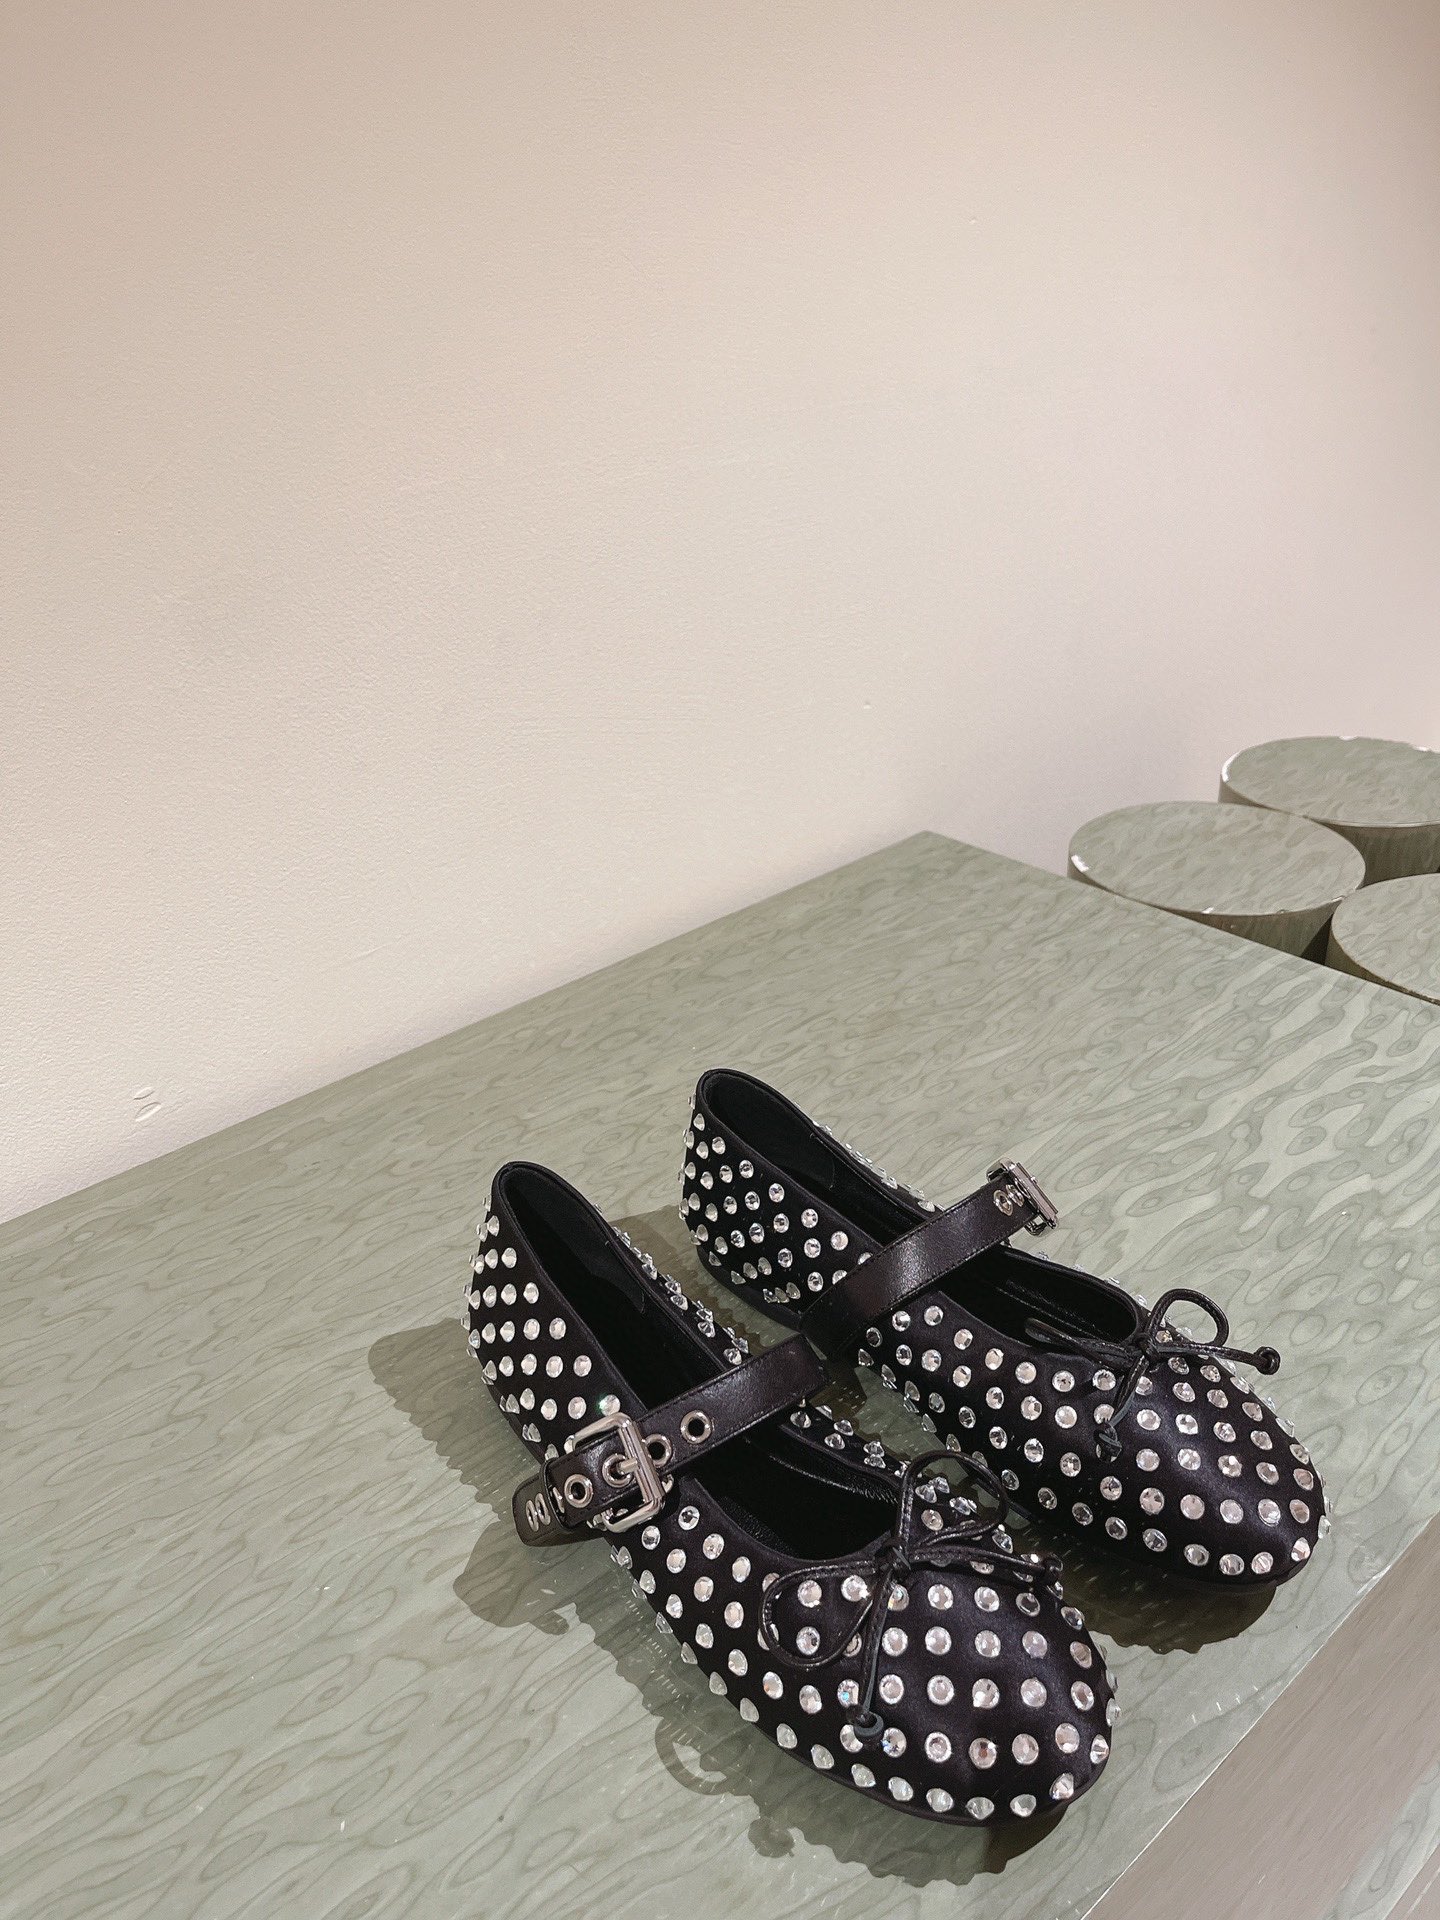 缪缪MIuMiu经典芭蕾舞鞋新品以芭蕾的灵动意韵融于日常以现代笔触刻画舞鞋经典轮廓！黑色钻饰皮质款芭蕾舞